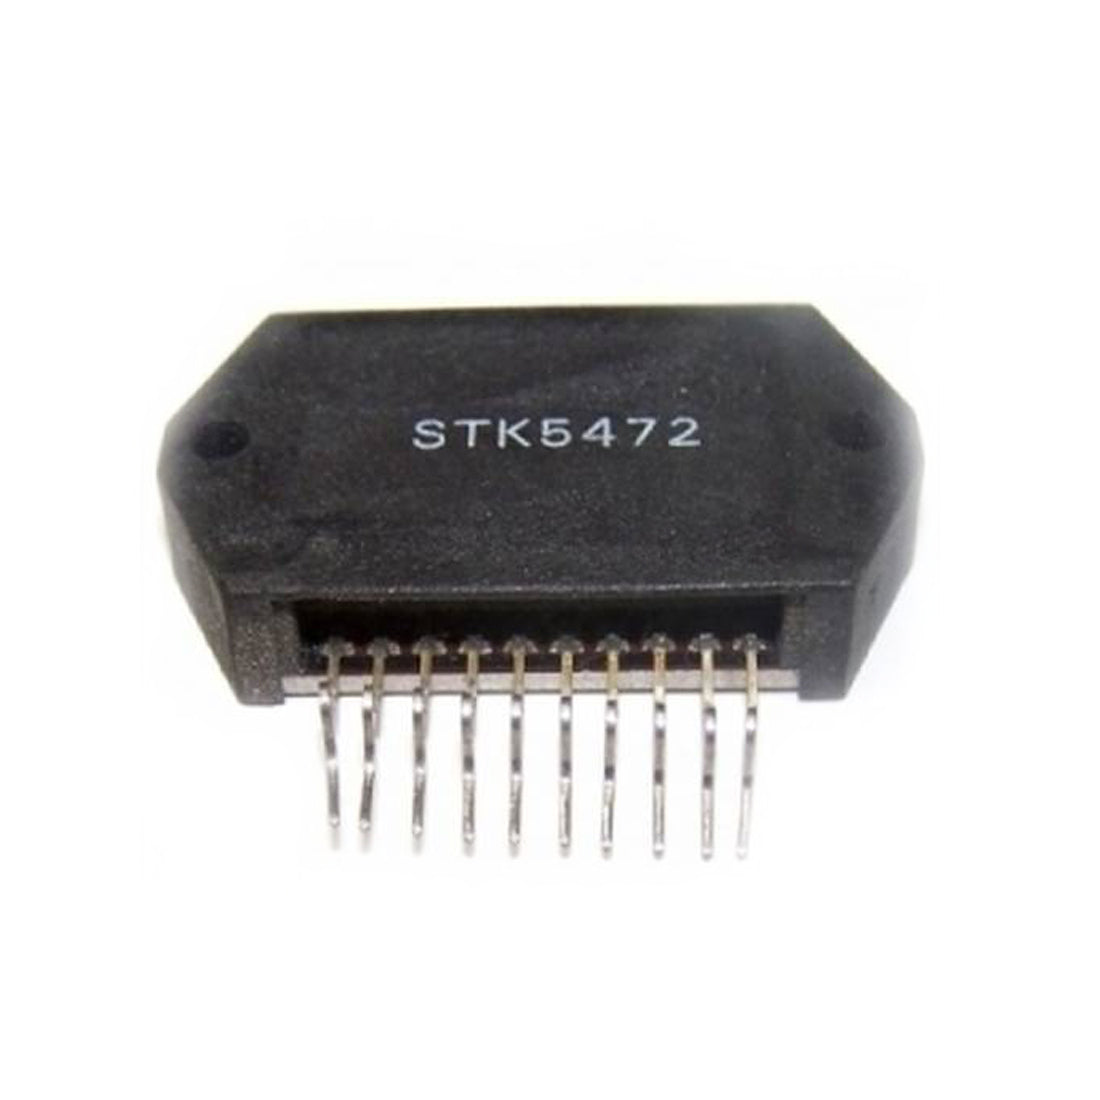 STK5472 Componente elettronico, circuito integrato, transistor, 10 contatti